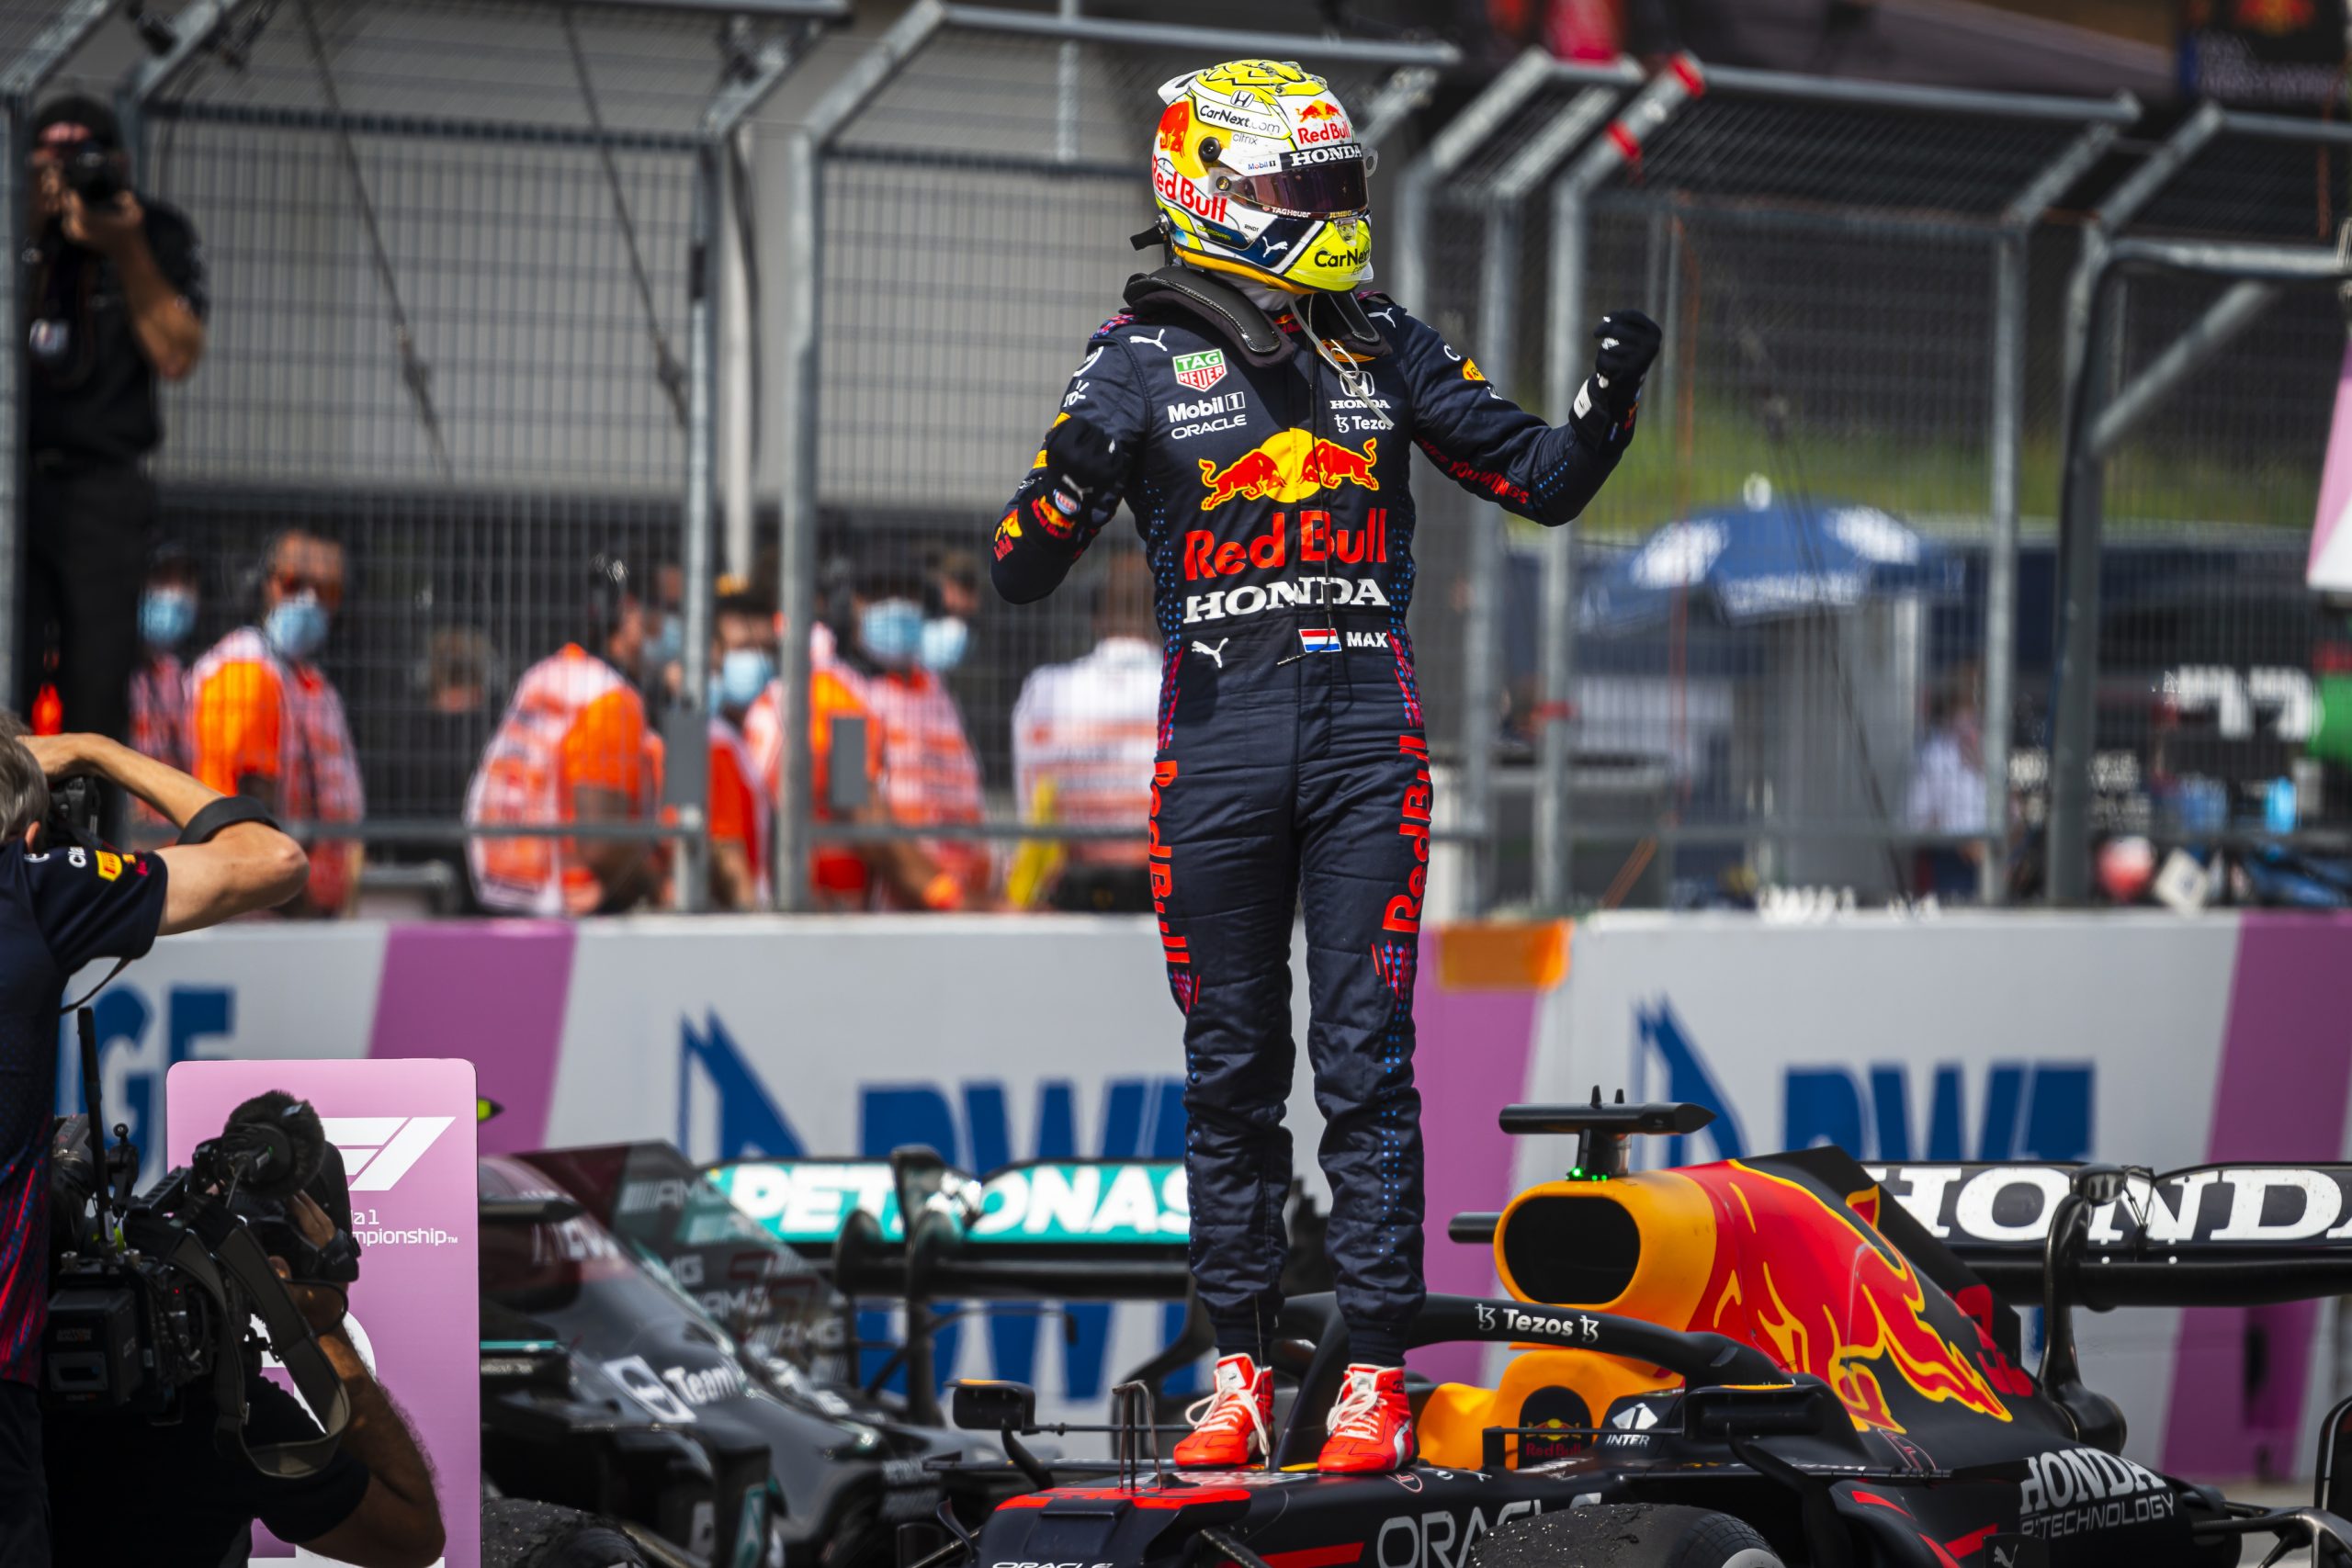 Formuła 1 GP Austrii 2021: Max Verstappen znów najlepszy! Imponująca jazda Lando Norrisa